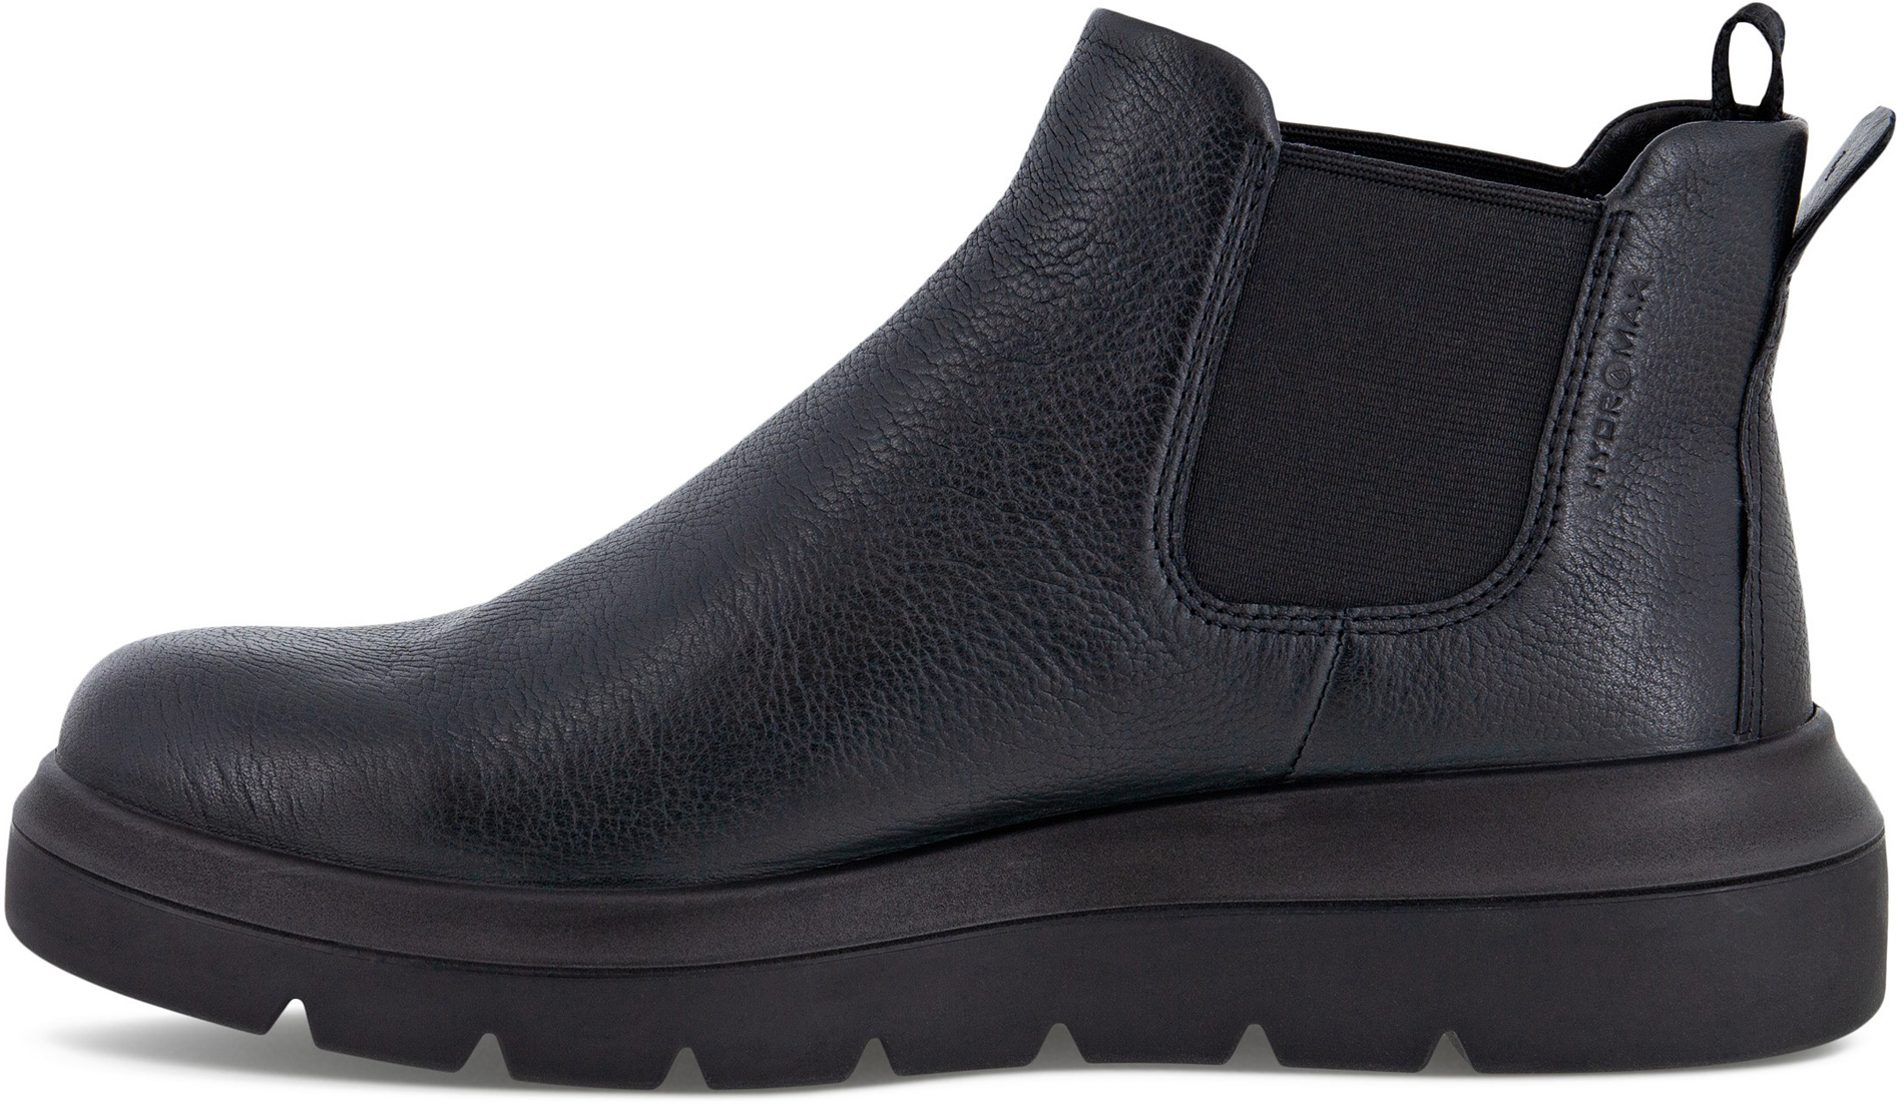 Ecco Nouvelle Chelsea Black 216233 01001 - Ankle Boots - Humphries Shoes